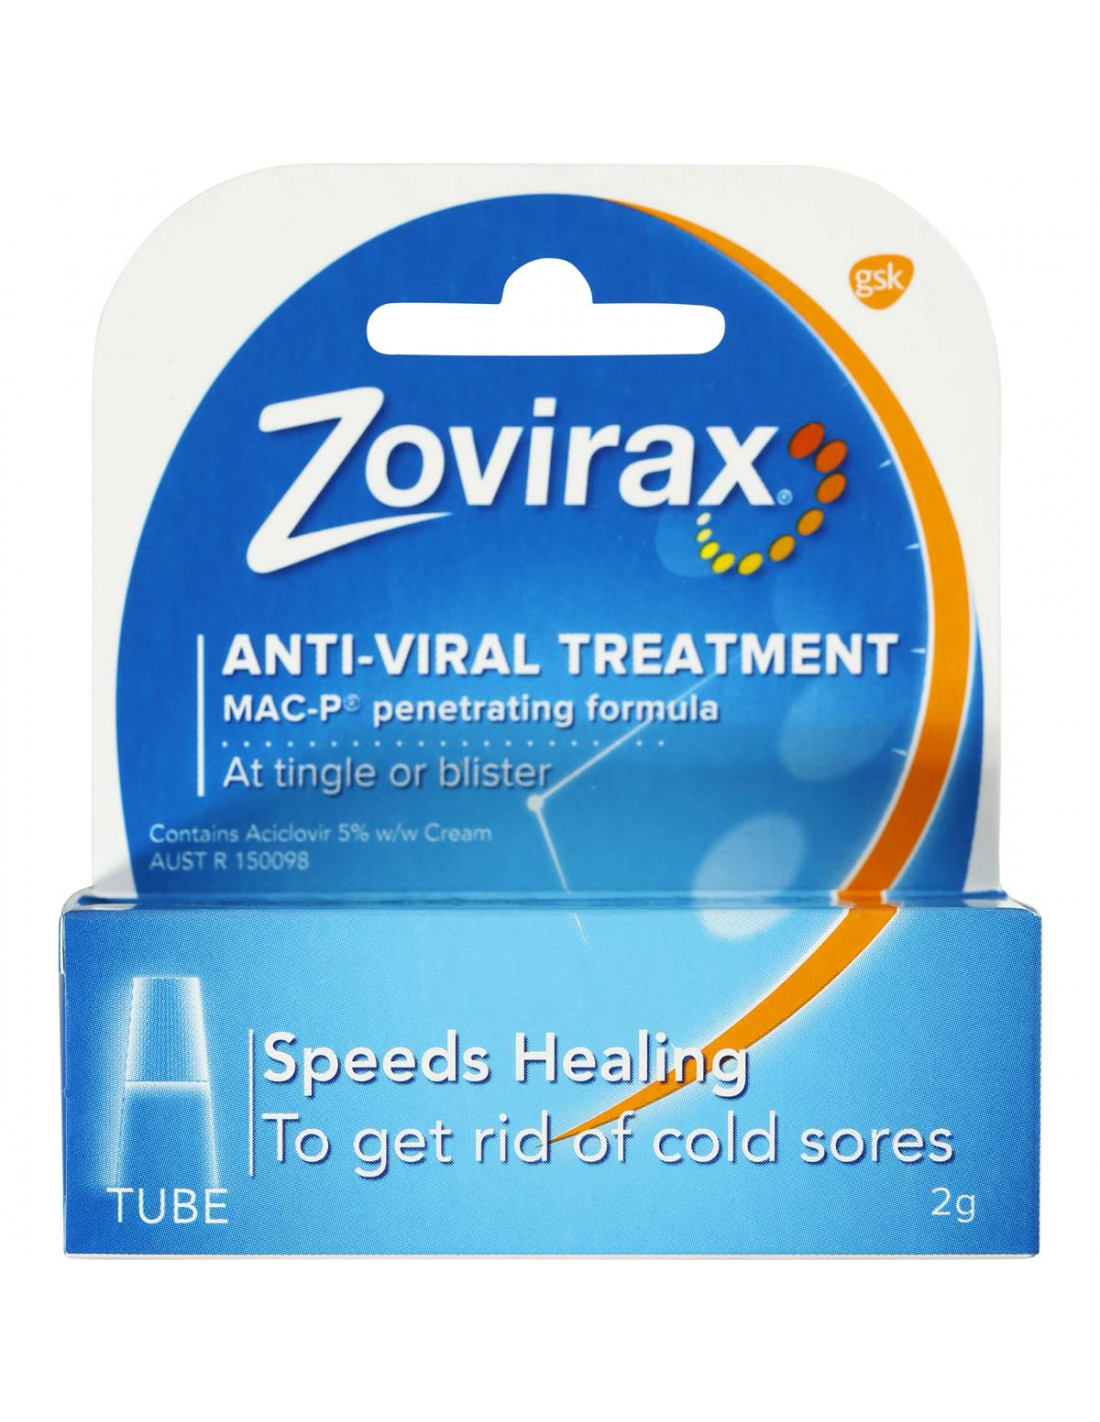 acyclovir for cold sores reviews